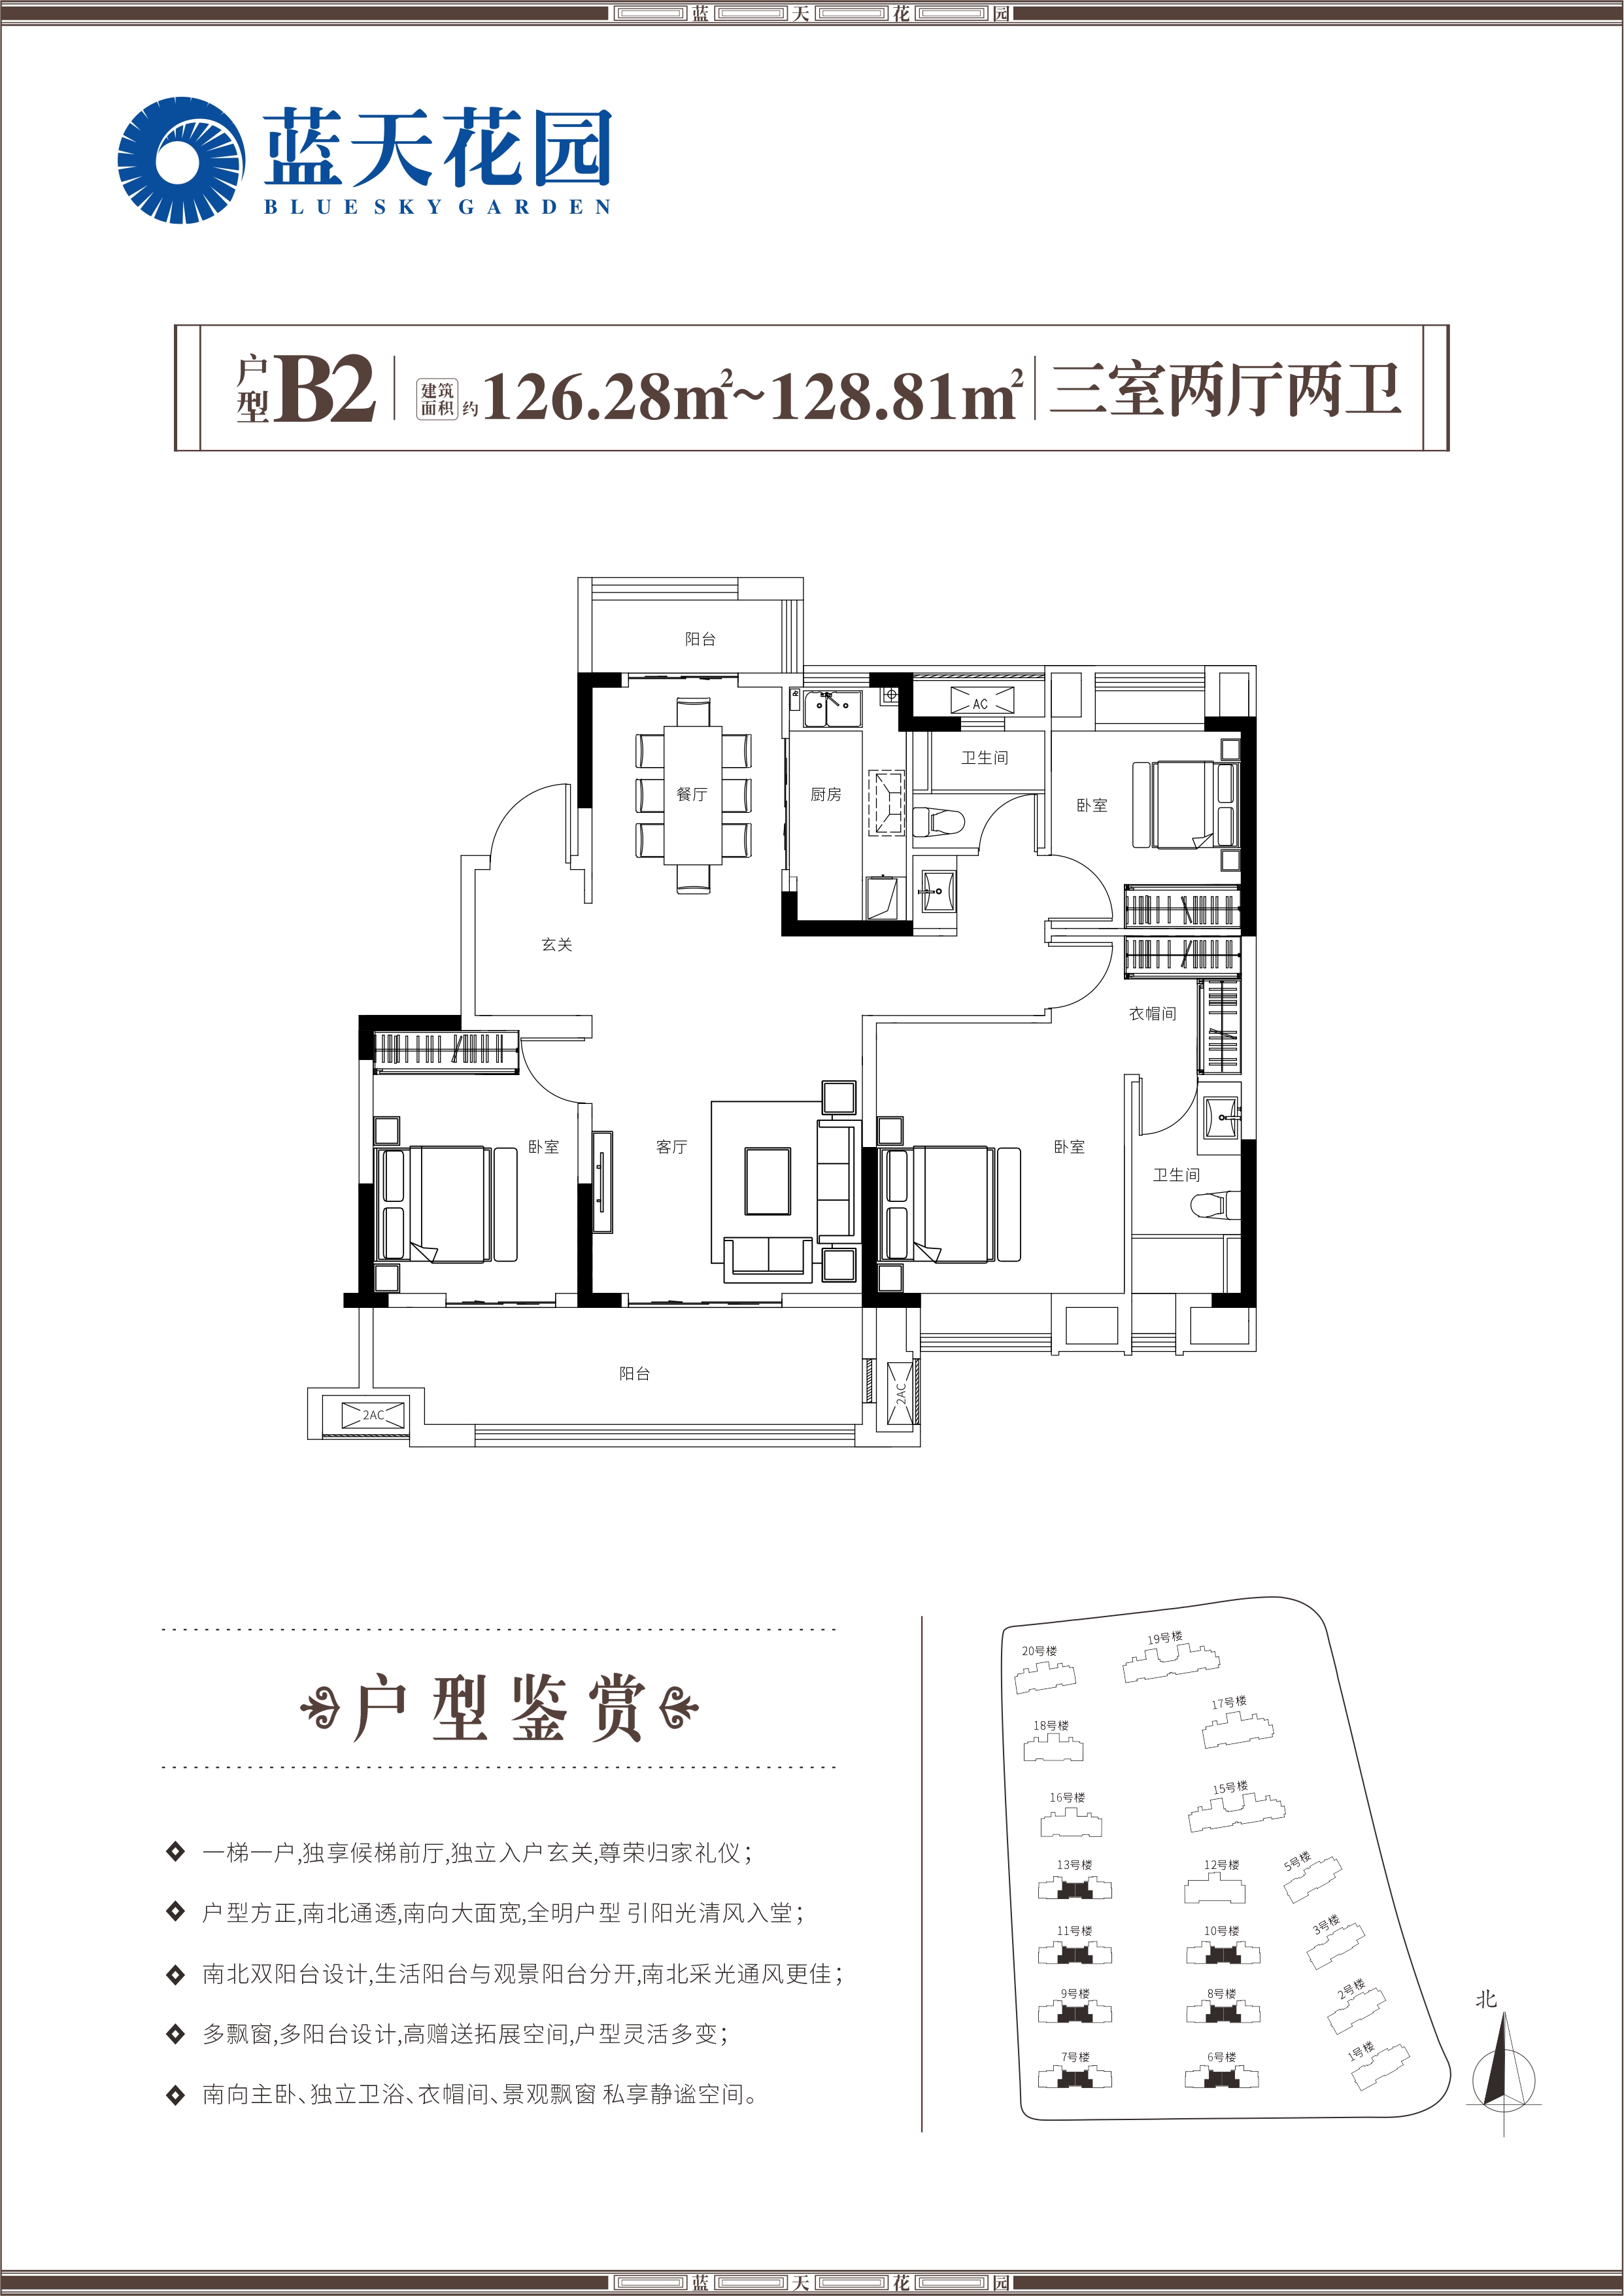  3室户型：3室2厅2卫 面积：126.28-128.81㎡ 